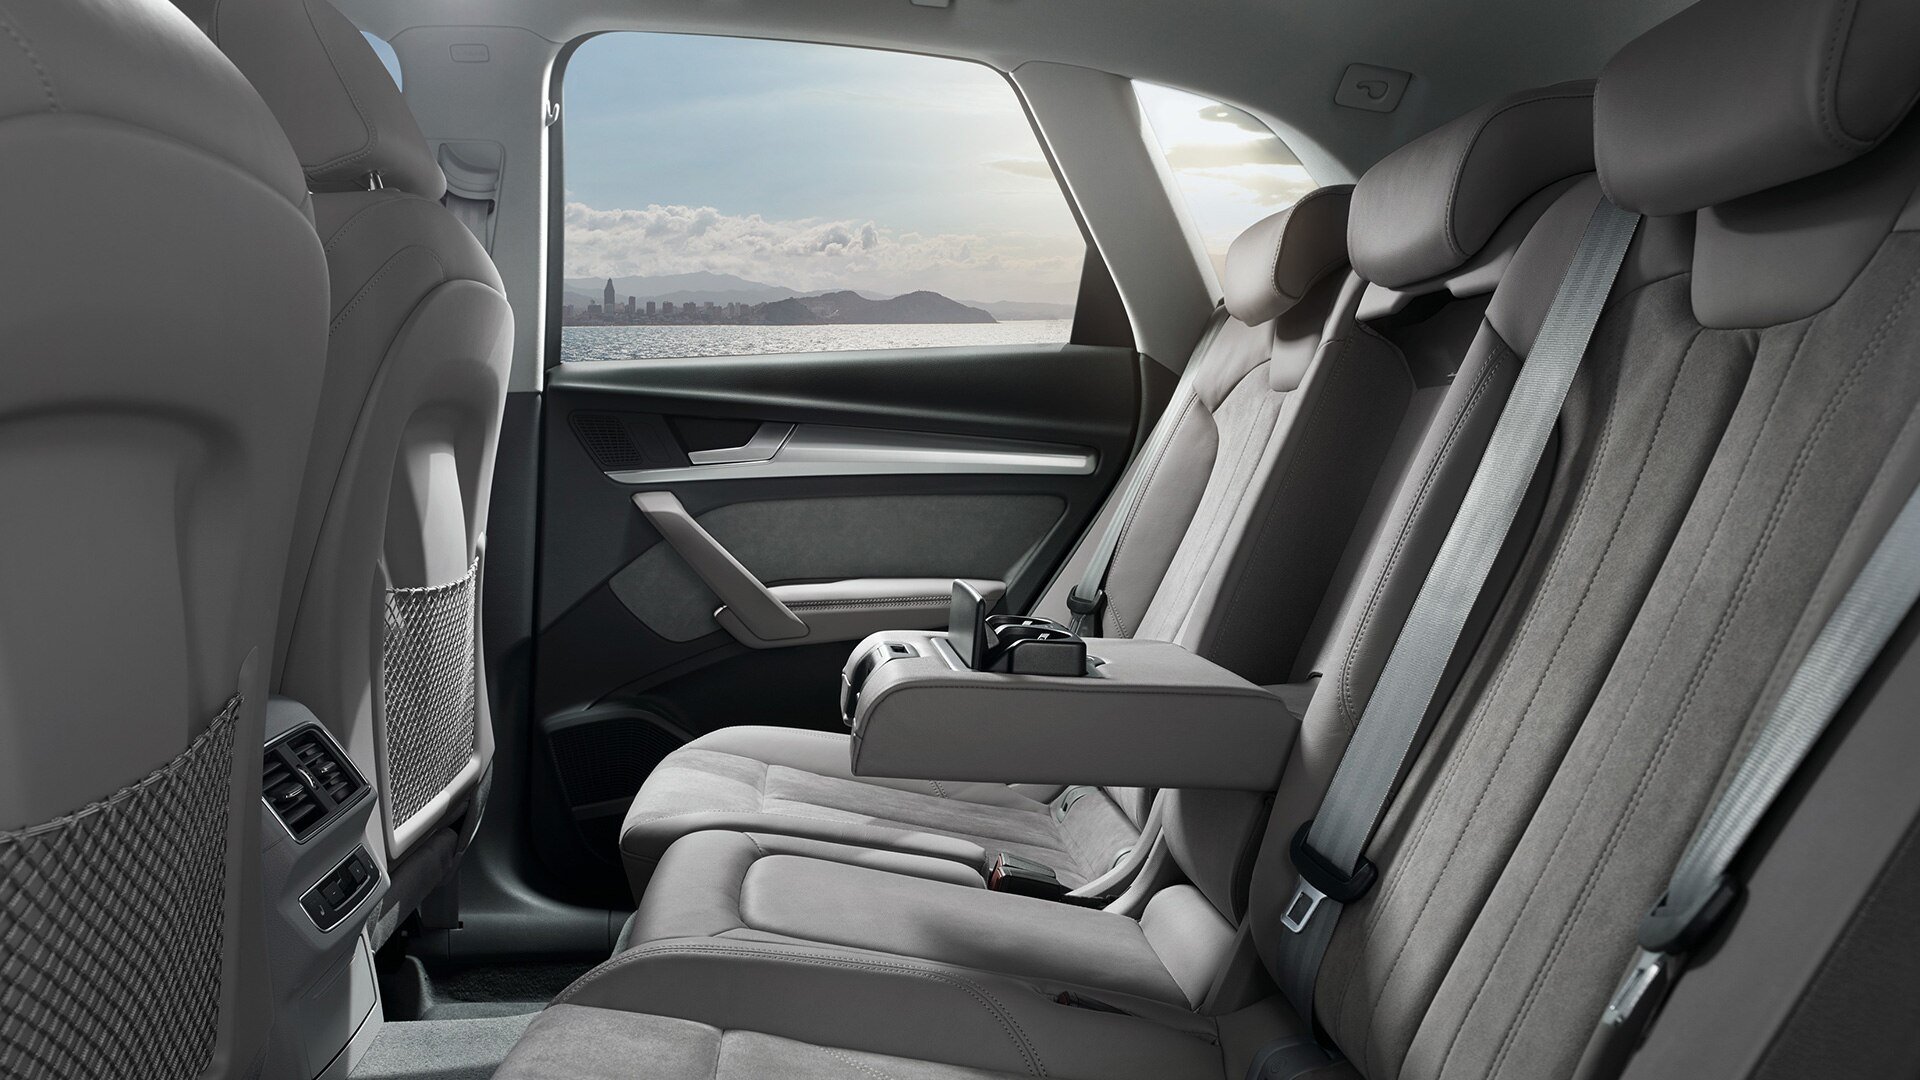 Audi Q5 interior - Rear Seats